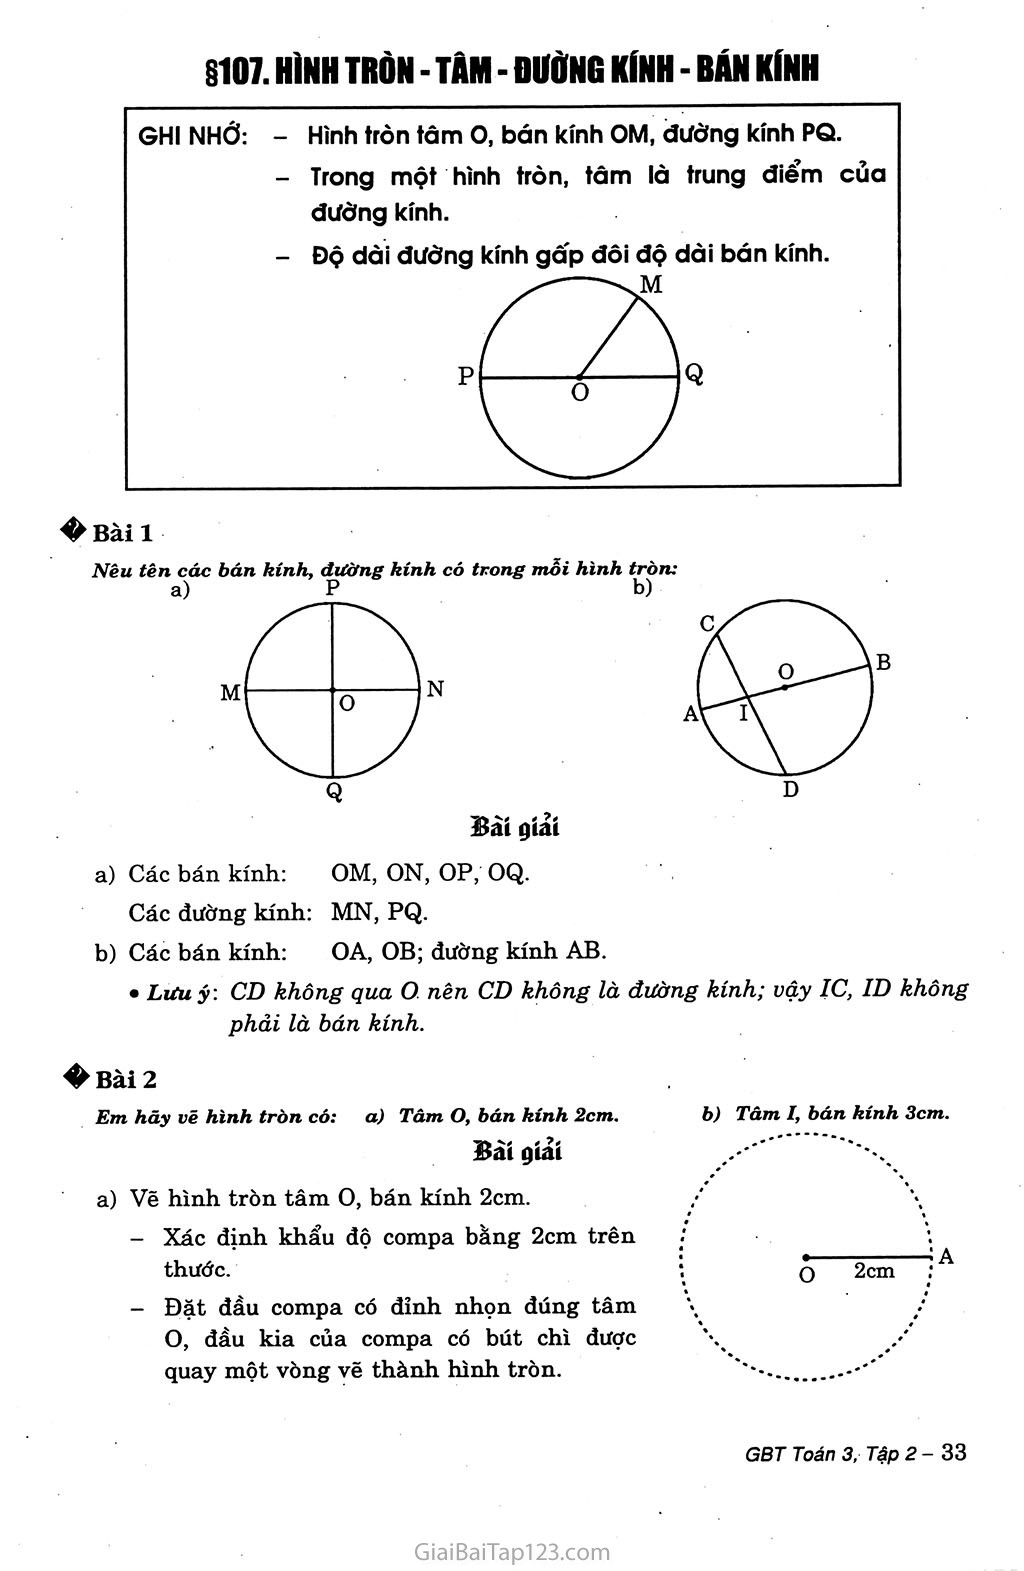 Làm thế nào để tính độ dài bán kính khi biết đường kính của một hình tròn? 
